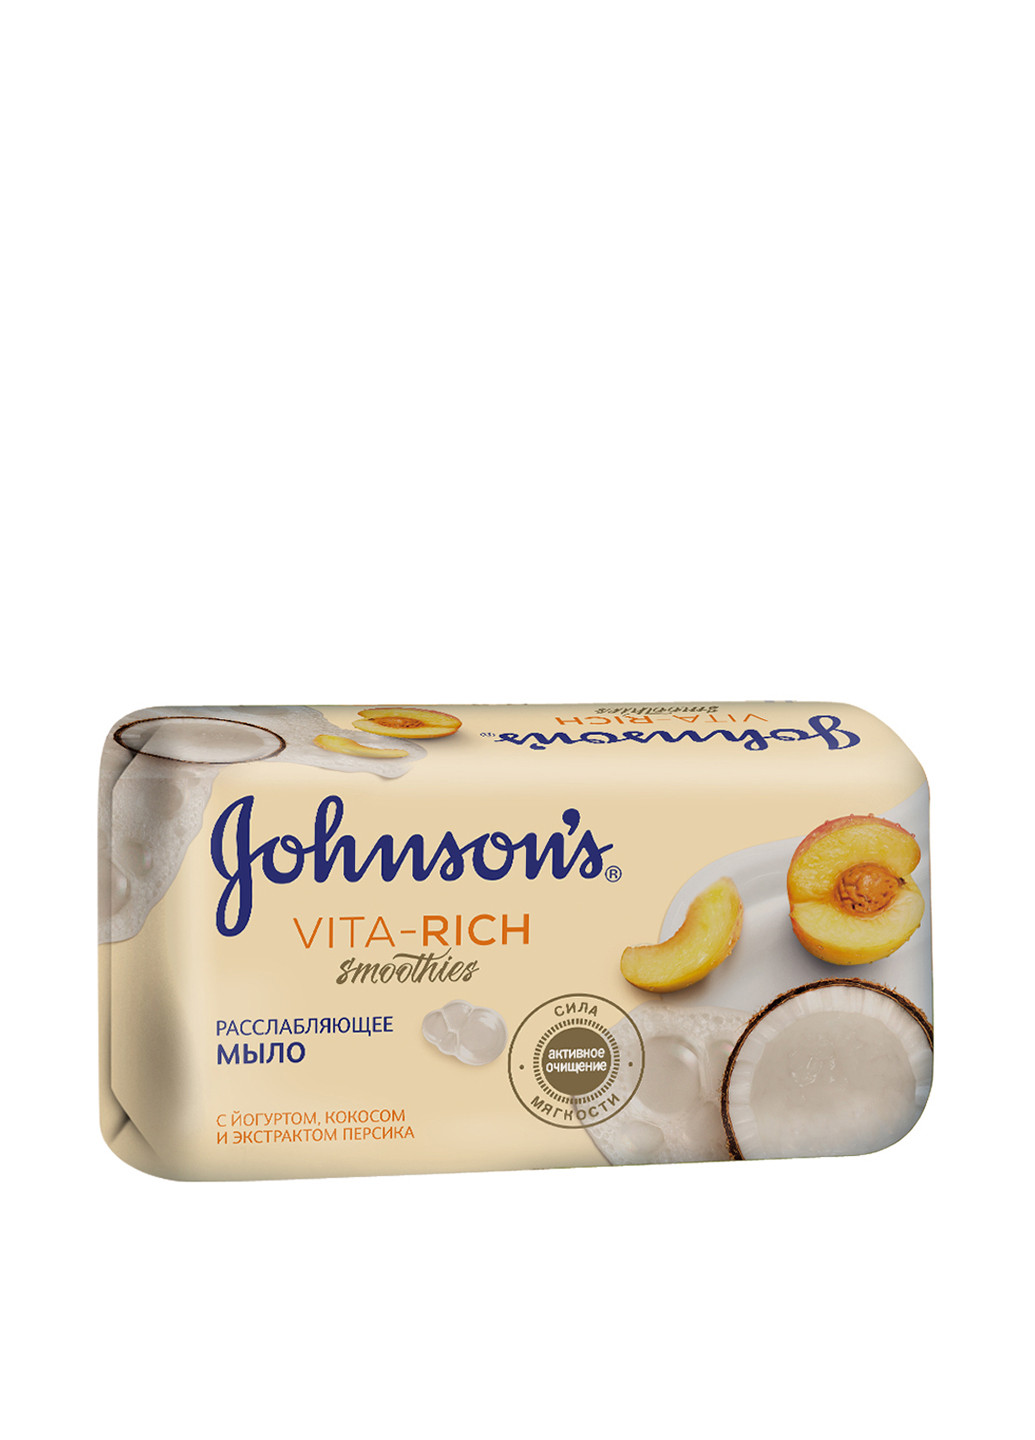 Мыло "Расслабляющее" с йогуртом, кокосом и экстрактом персика Body Care Vita-Rich Smoothies Soap 125 г Johnson's (88097073)